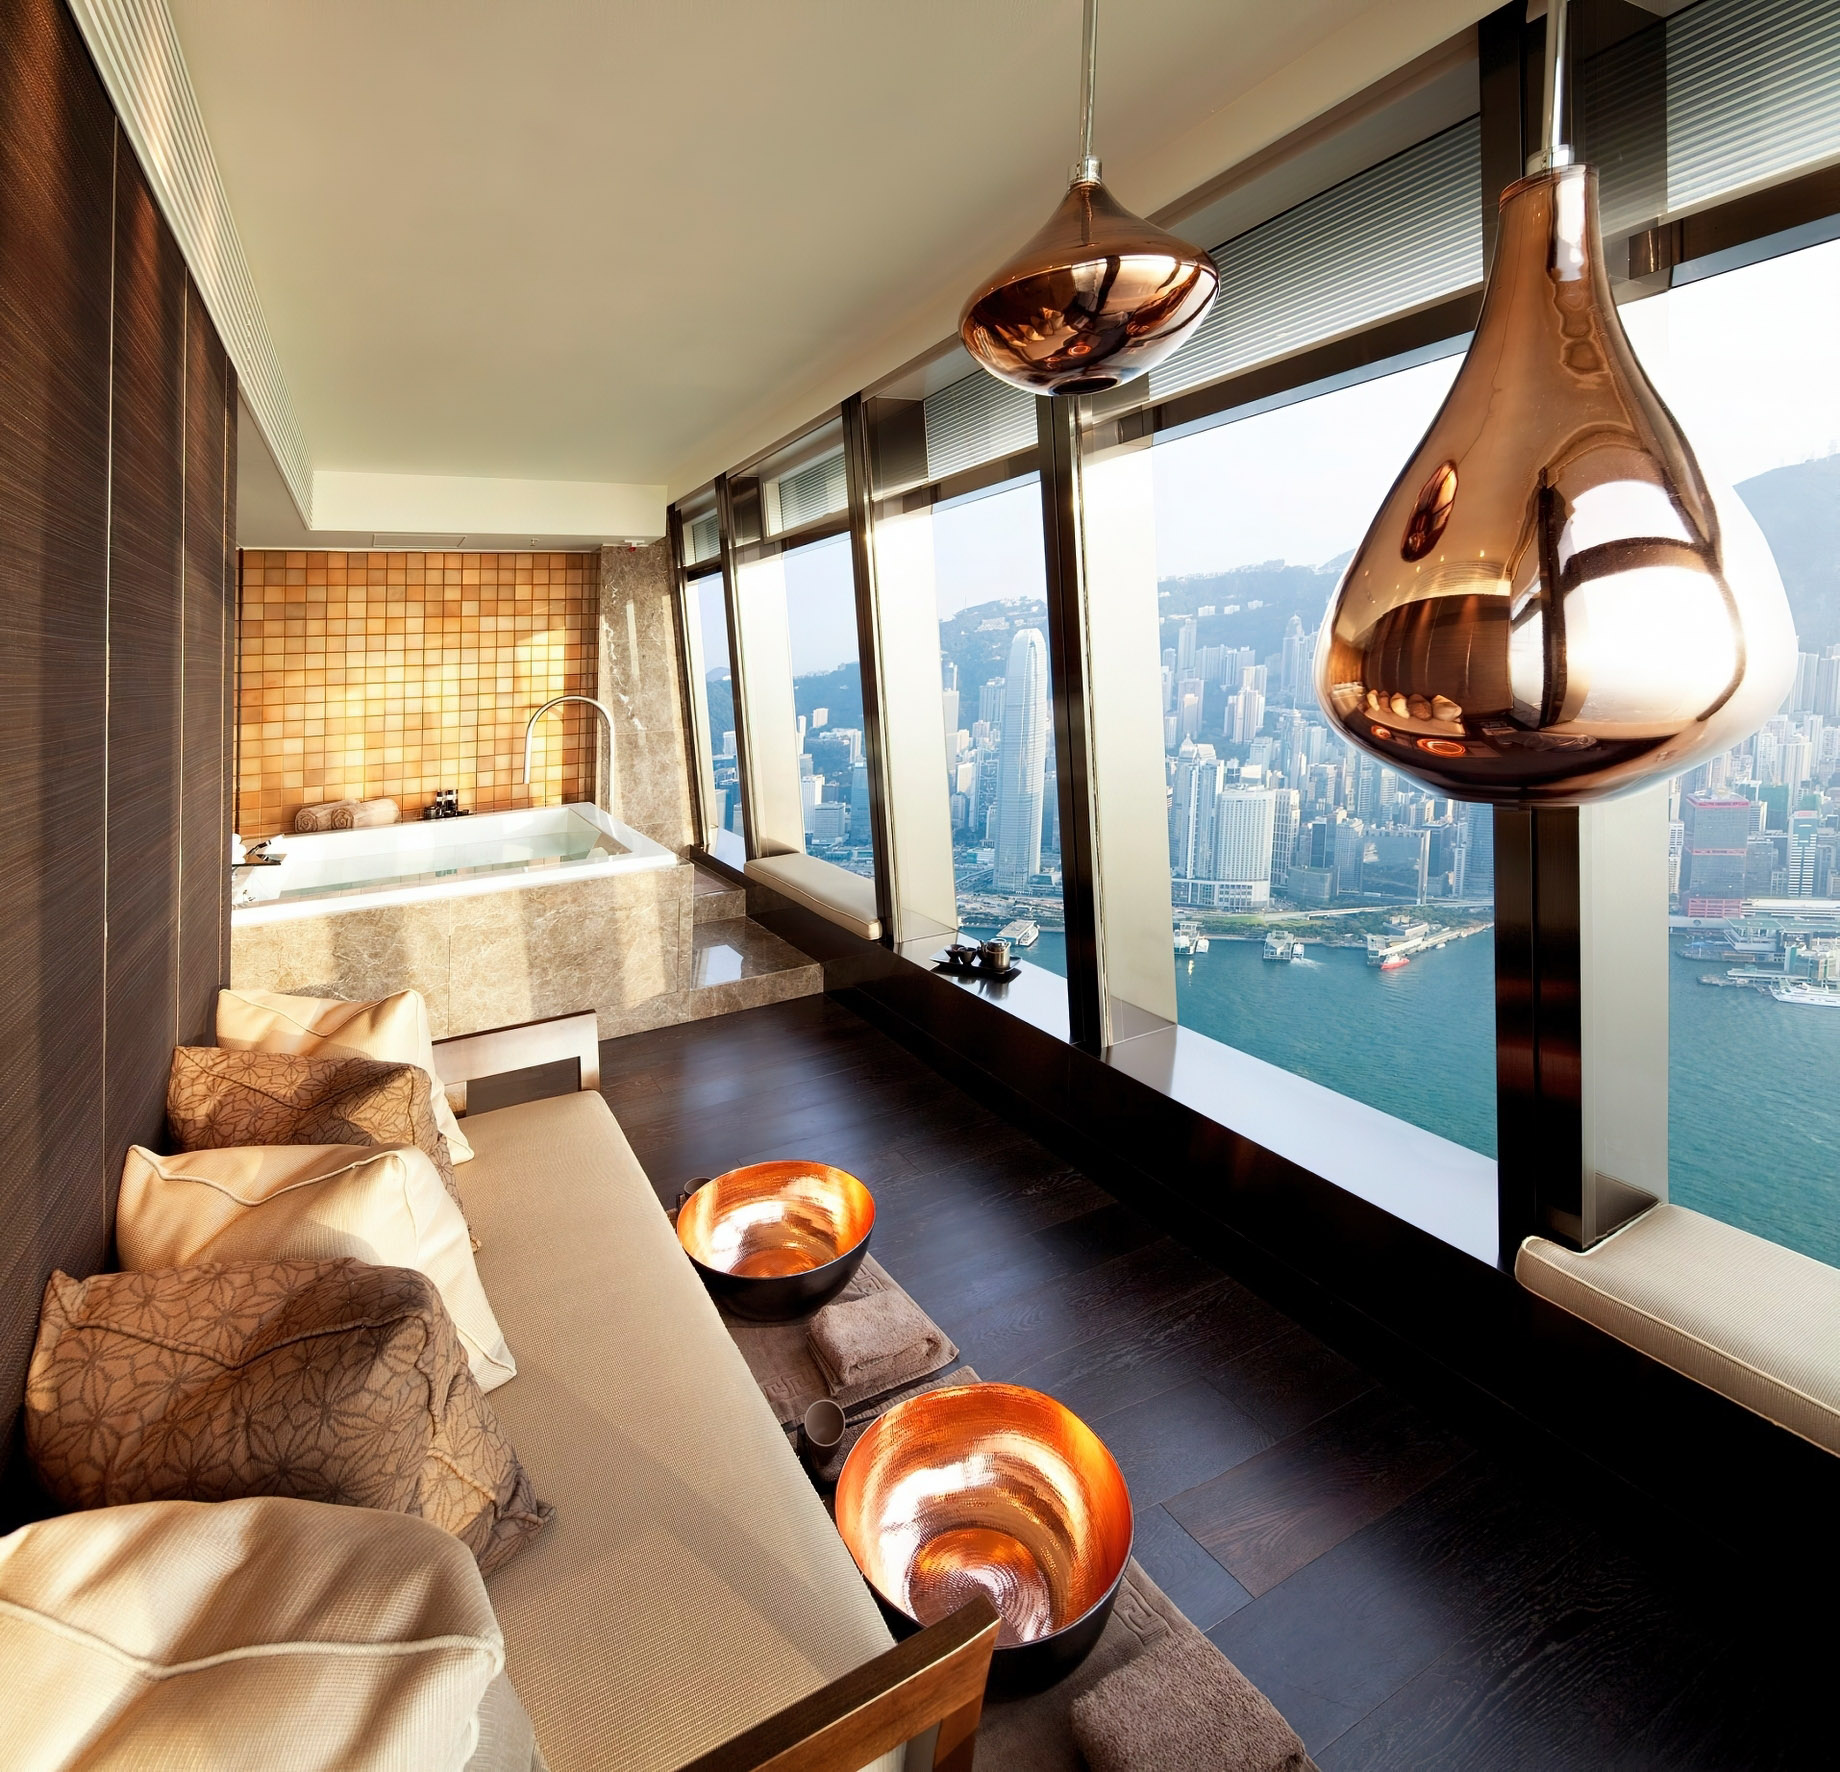 The Ritz-Carlton, Hong Kong Hotel – West Kowloon, Hong Kong – Spa View